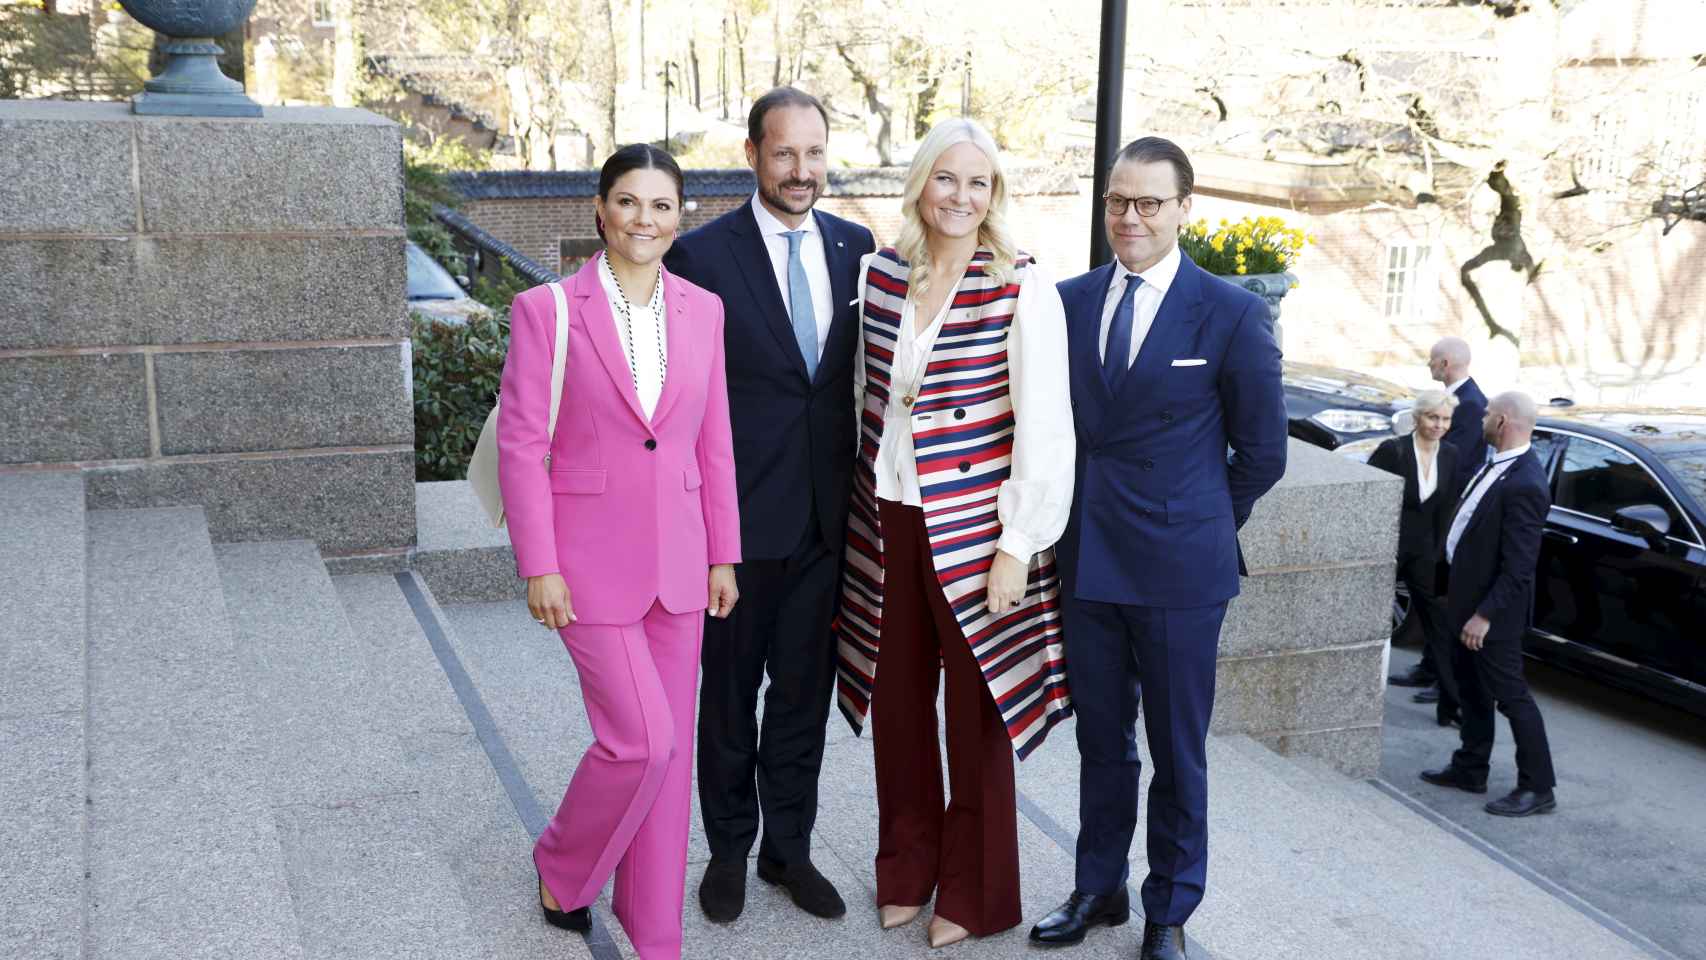 Victoria de Suecia, Haakon y Mette-Marit de Noruega y Daniel Westling.